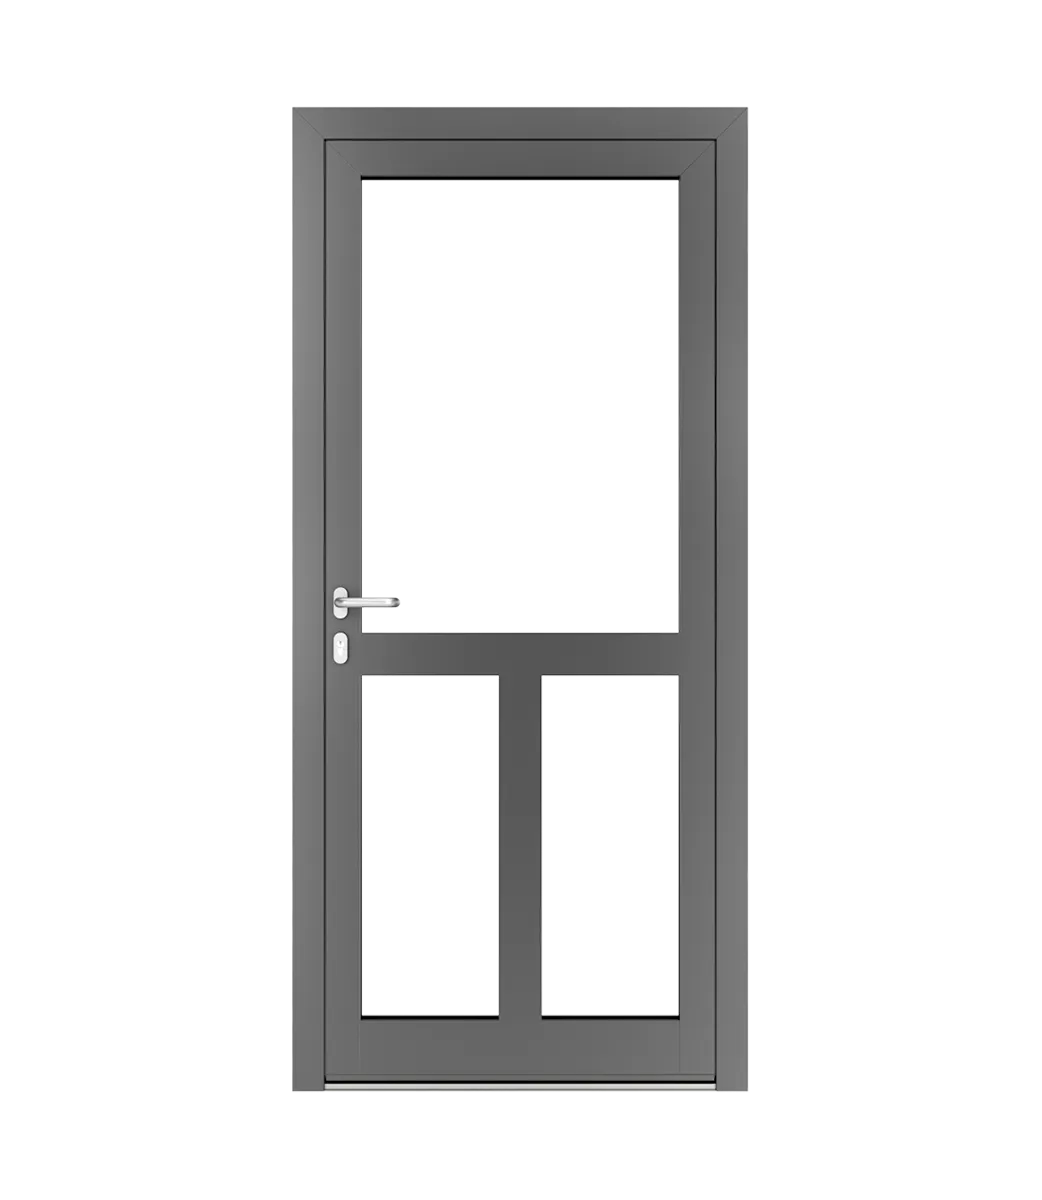 AP Fensterbau, Schnürungen in Aluminiumtüren - Beispiel Nr. 6